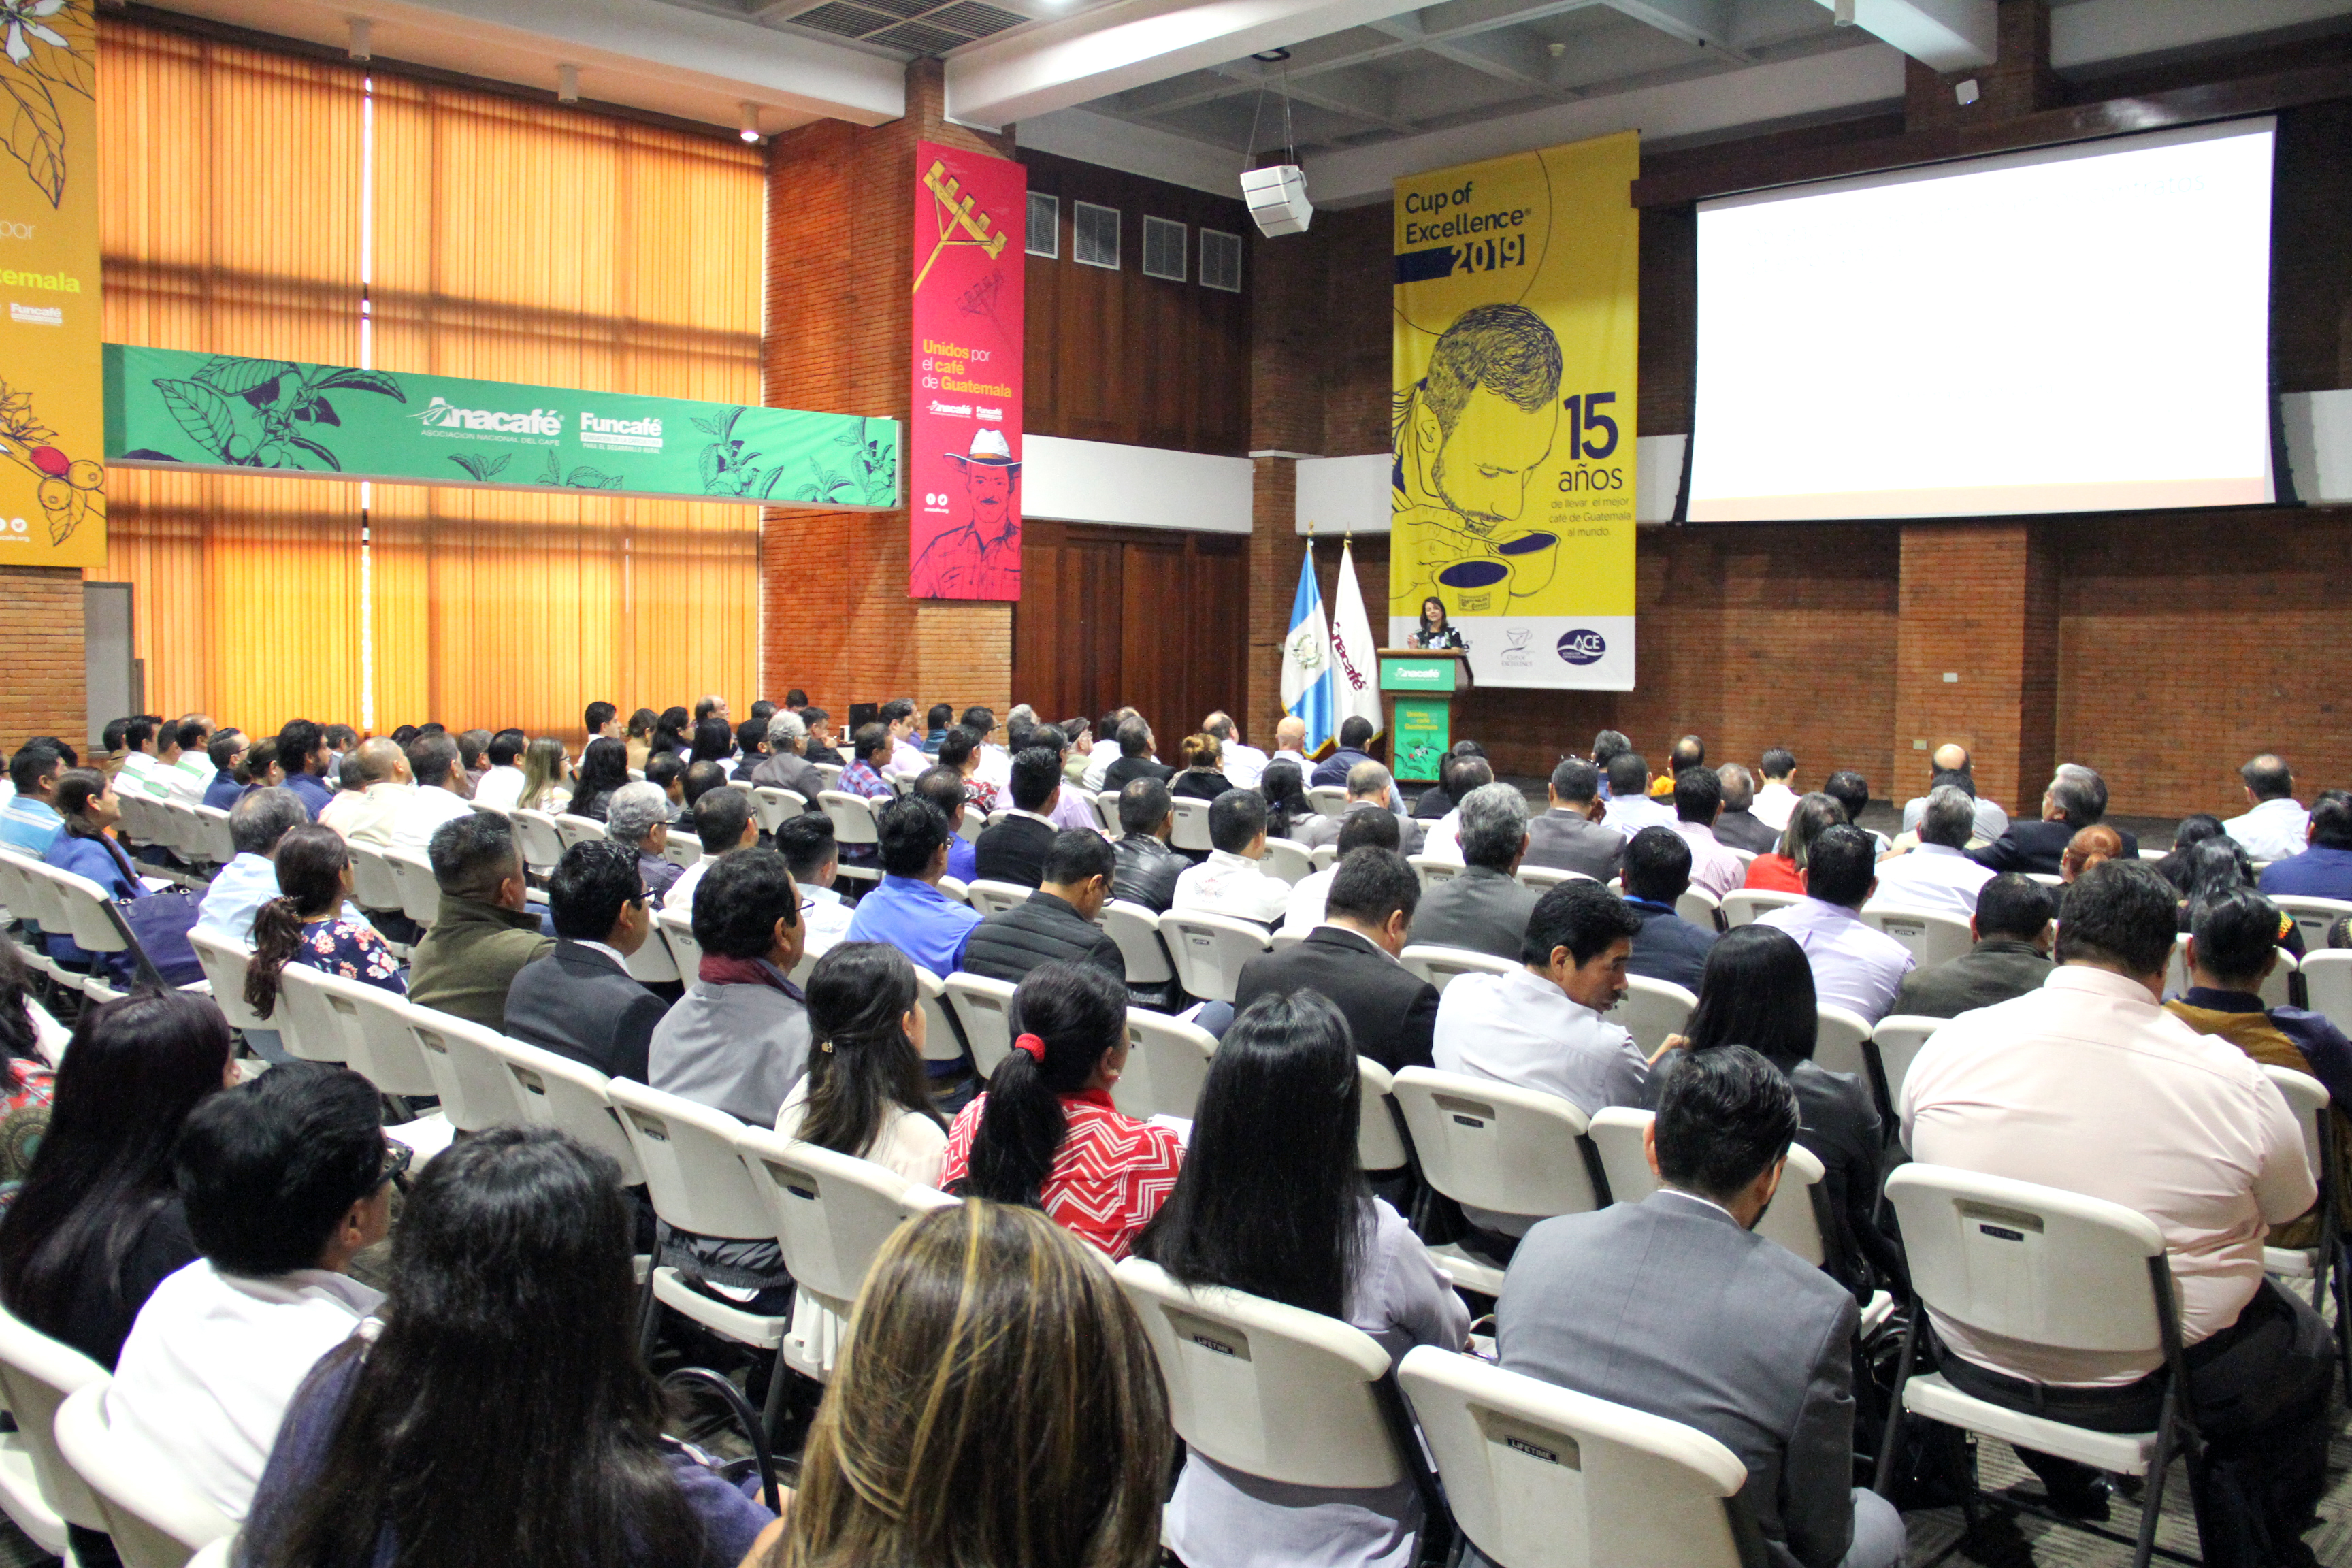 Anacafé llevó a cabo un seminario sobre cómo aplicar el trabajo a tiempo parcial en el sector cafetalero. (Foto Prensa Libre: Cortesía)